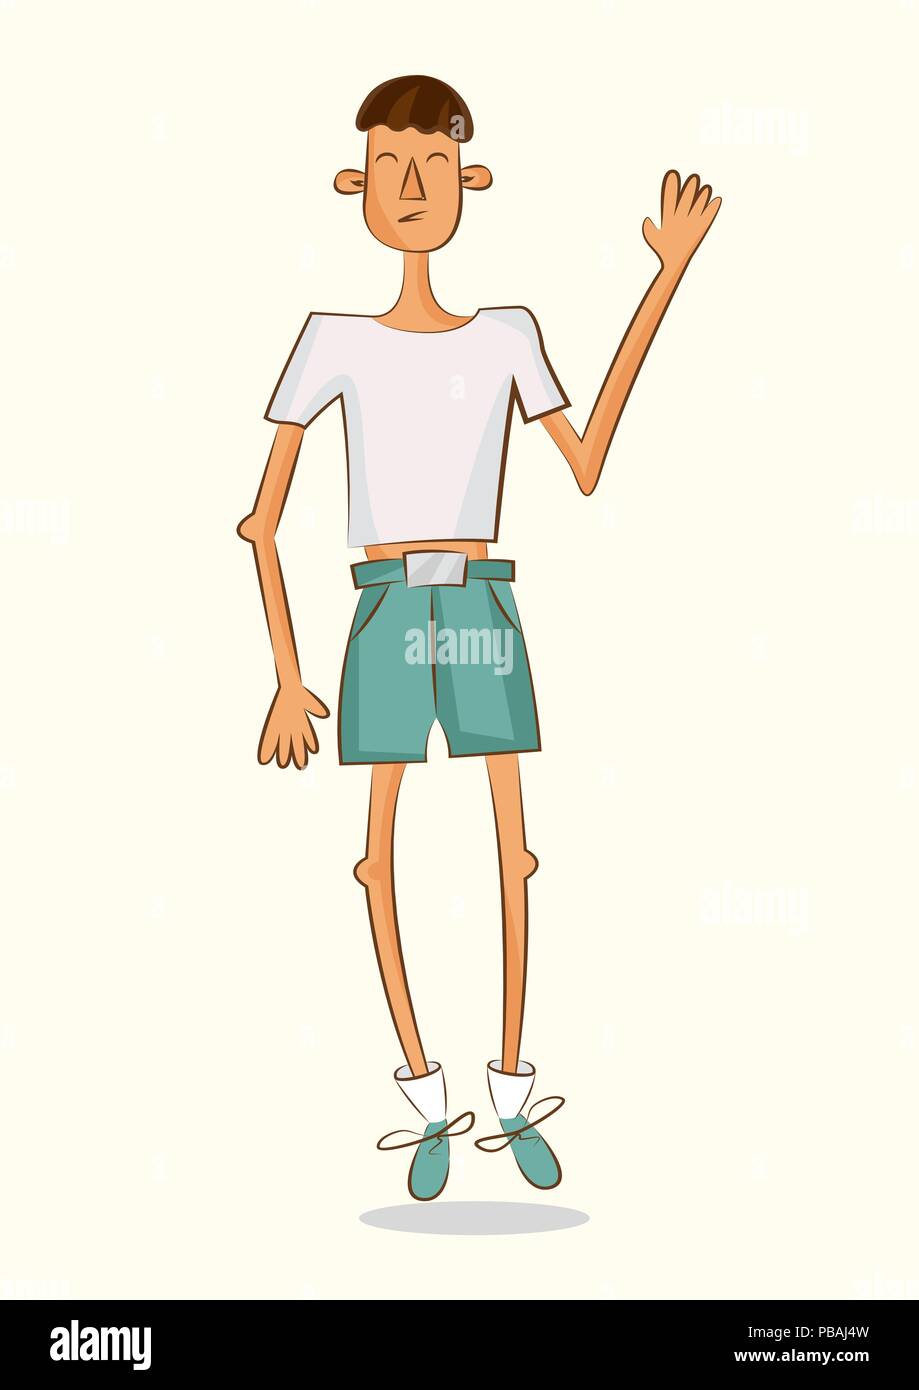 Dünne cartoon Charakter. Junge mit kurzen Gewicht. Isolierte Vector Illustration auf weißem Hintergrund Stock Vektor